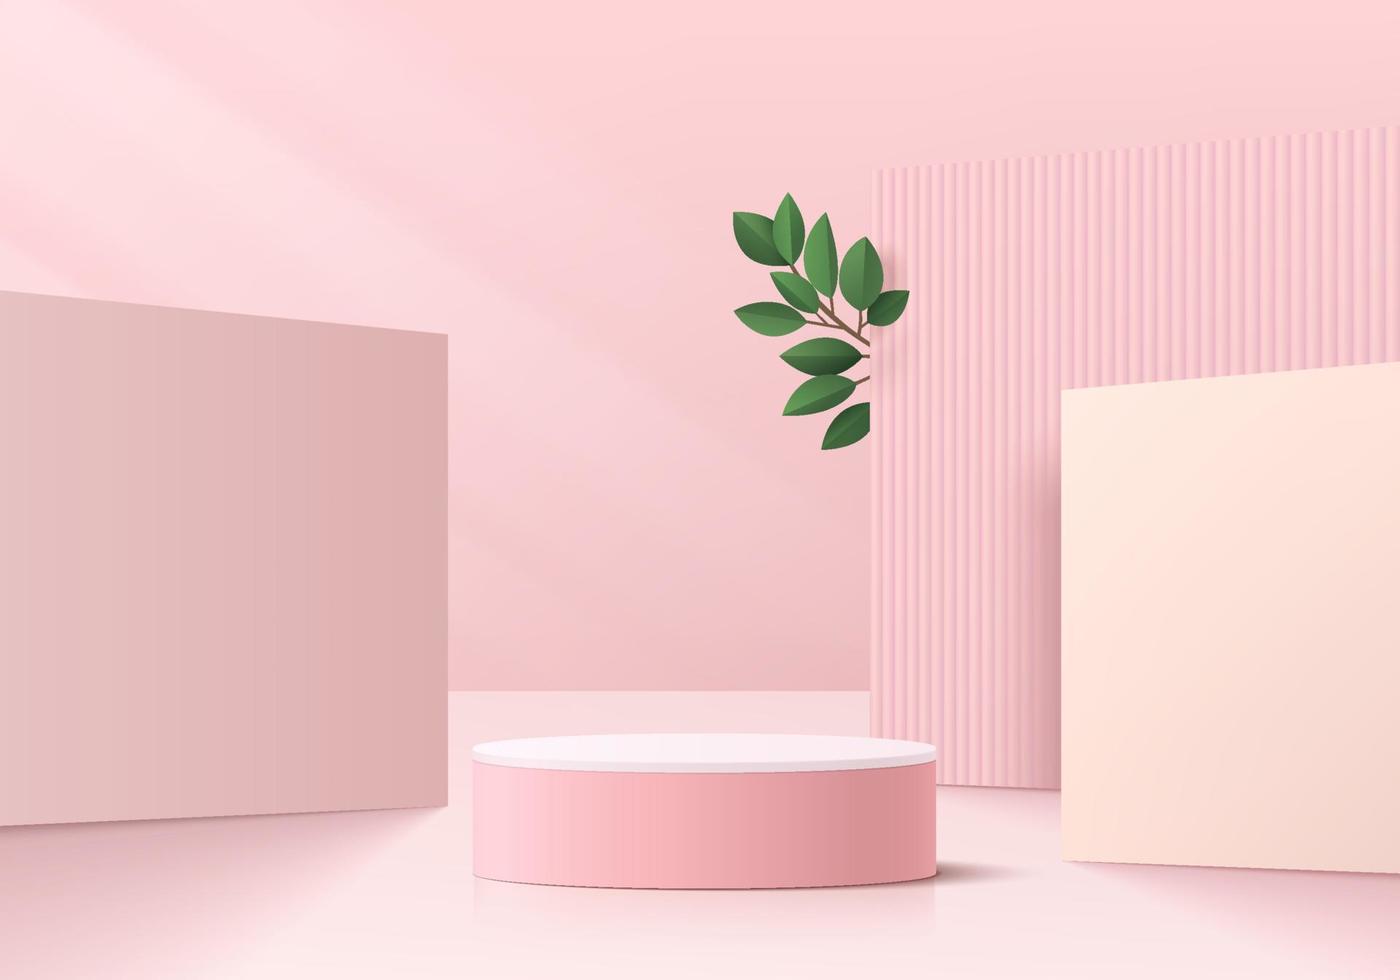 realistisches 3d rosa, weißes zylindersockelpodium mit quadratischem szenenhintergrund und grünem blatt. Vektor abstrakter Raum, geometrische Form. minimale szene für produktpräsentation, bühnenwerbung.